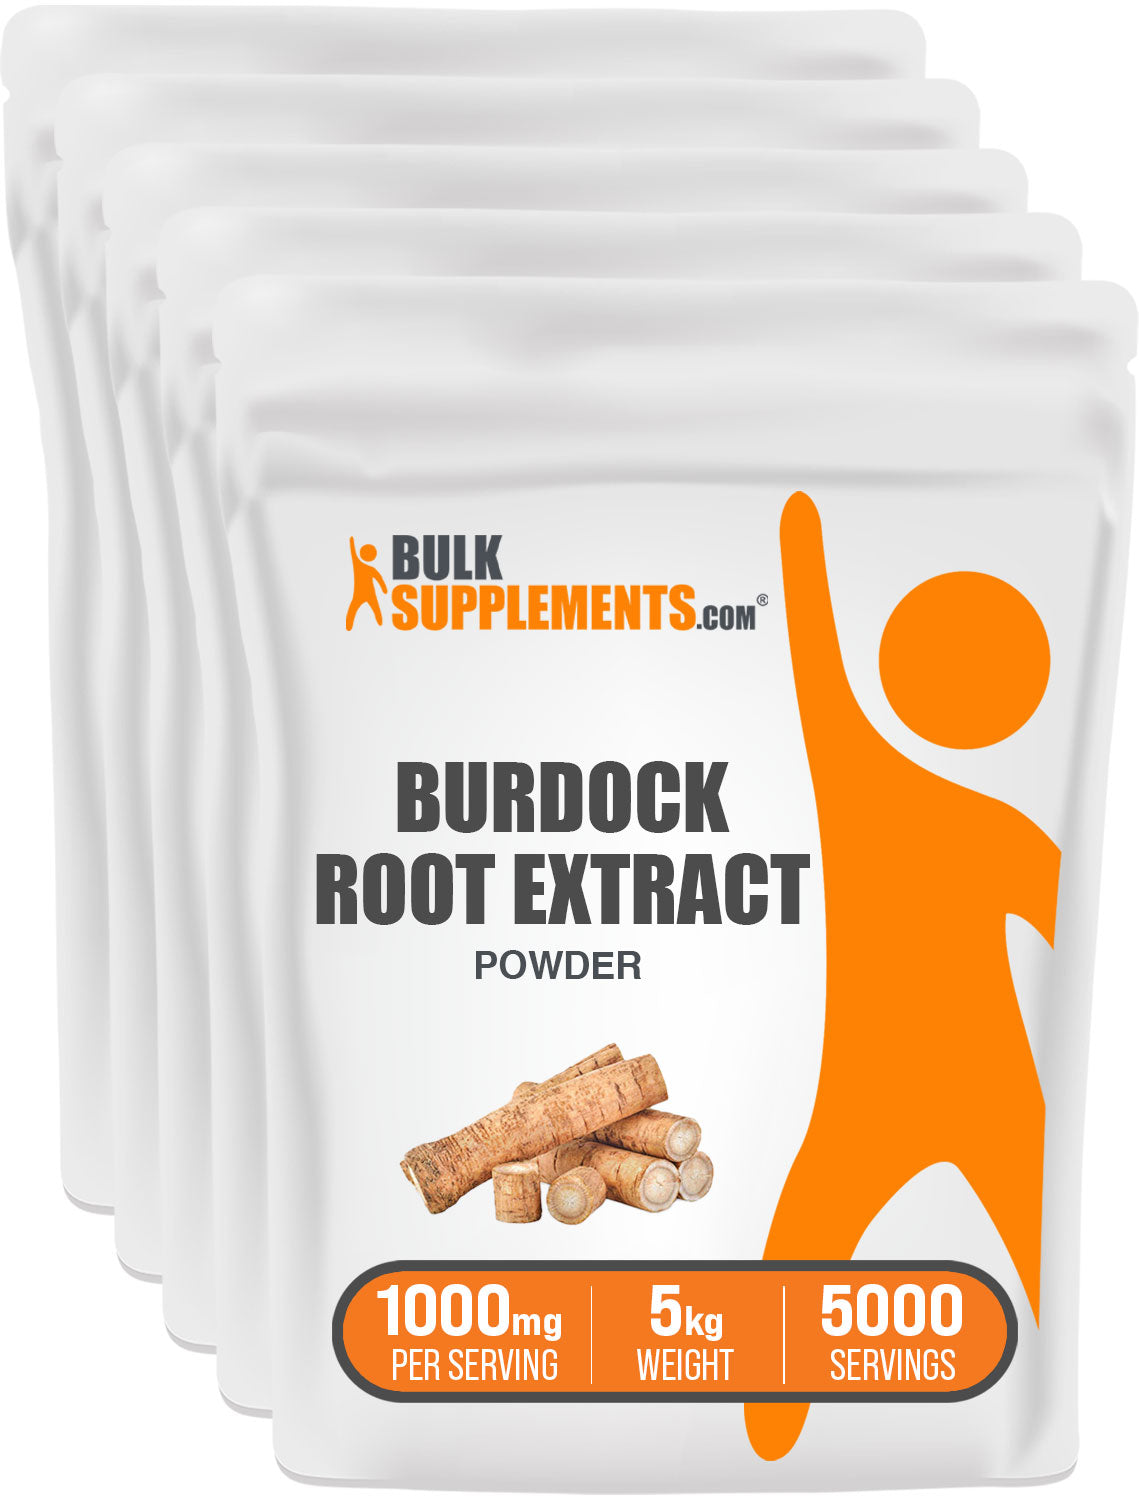 5kg of burdock root